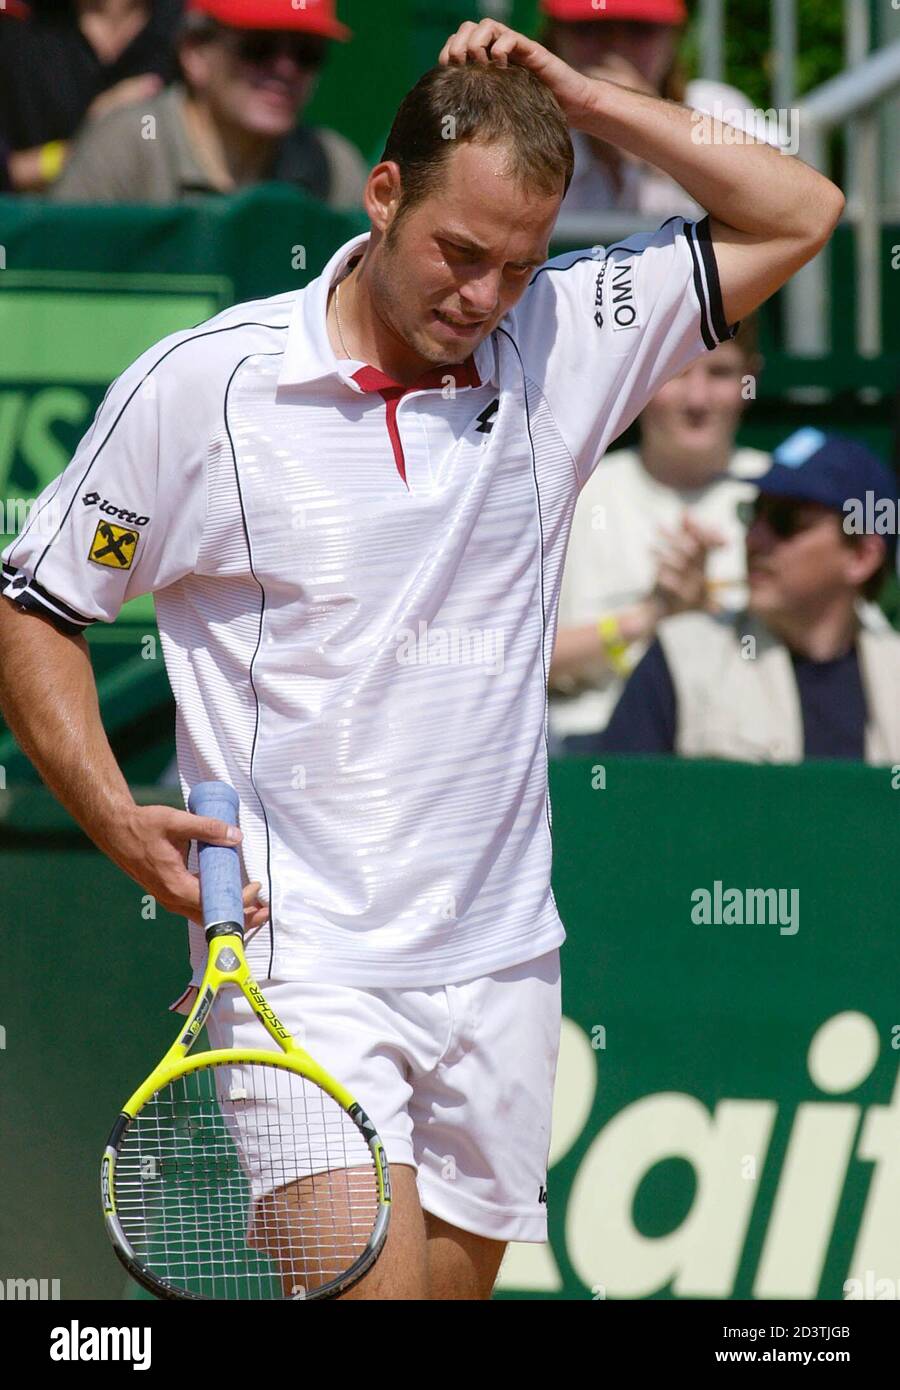 Oesterreichs Markus Hipfl verlor heute, am 26. Mai 2001, das Finale des St.  Poeltener ATP-Tennisturniers gegen den Italiener Andrea Gaudenzi 0-6 5-7.  Im Bild Hipfl waehrend der ersten Satzes. HP Stock Photo - Alamy